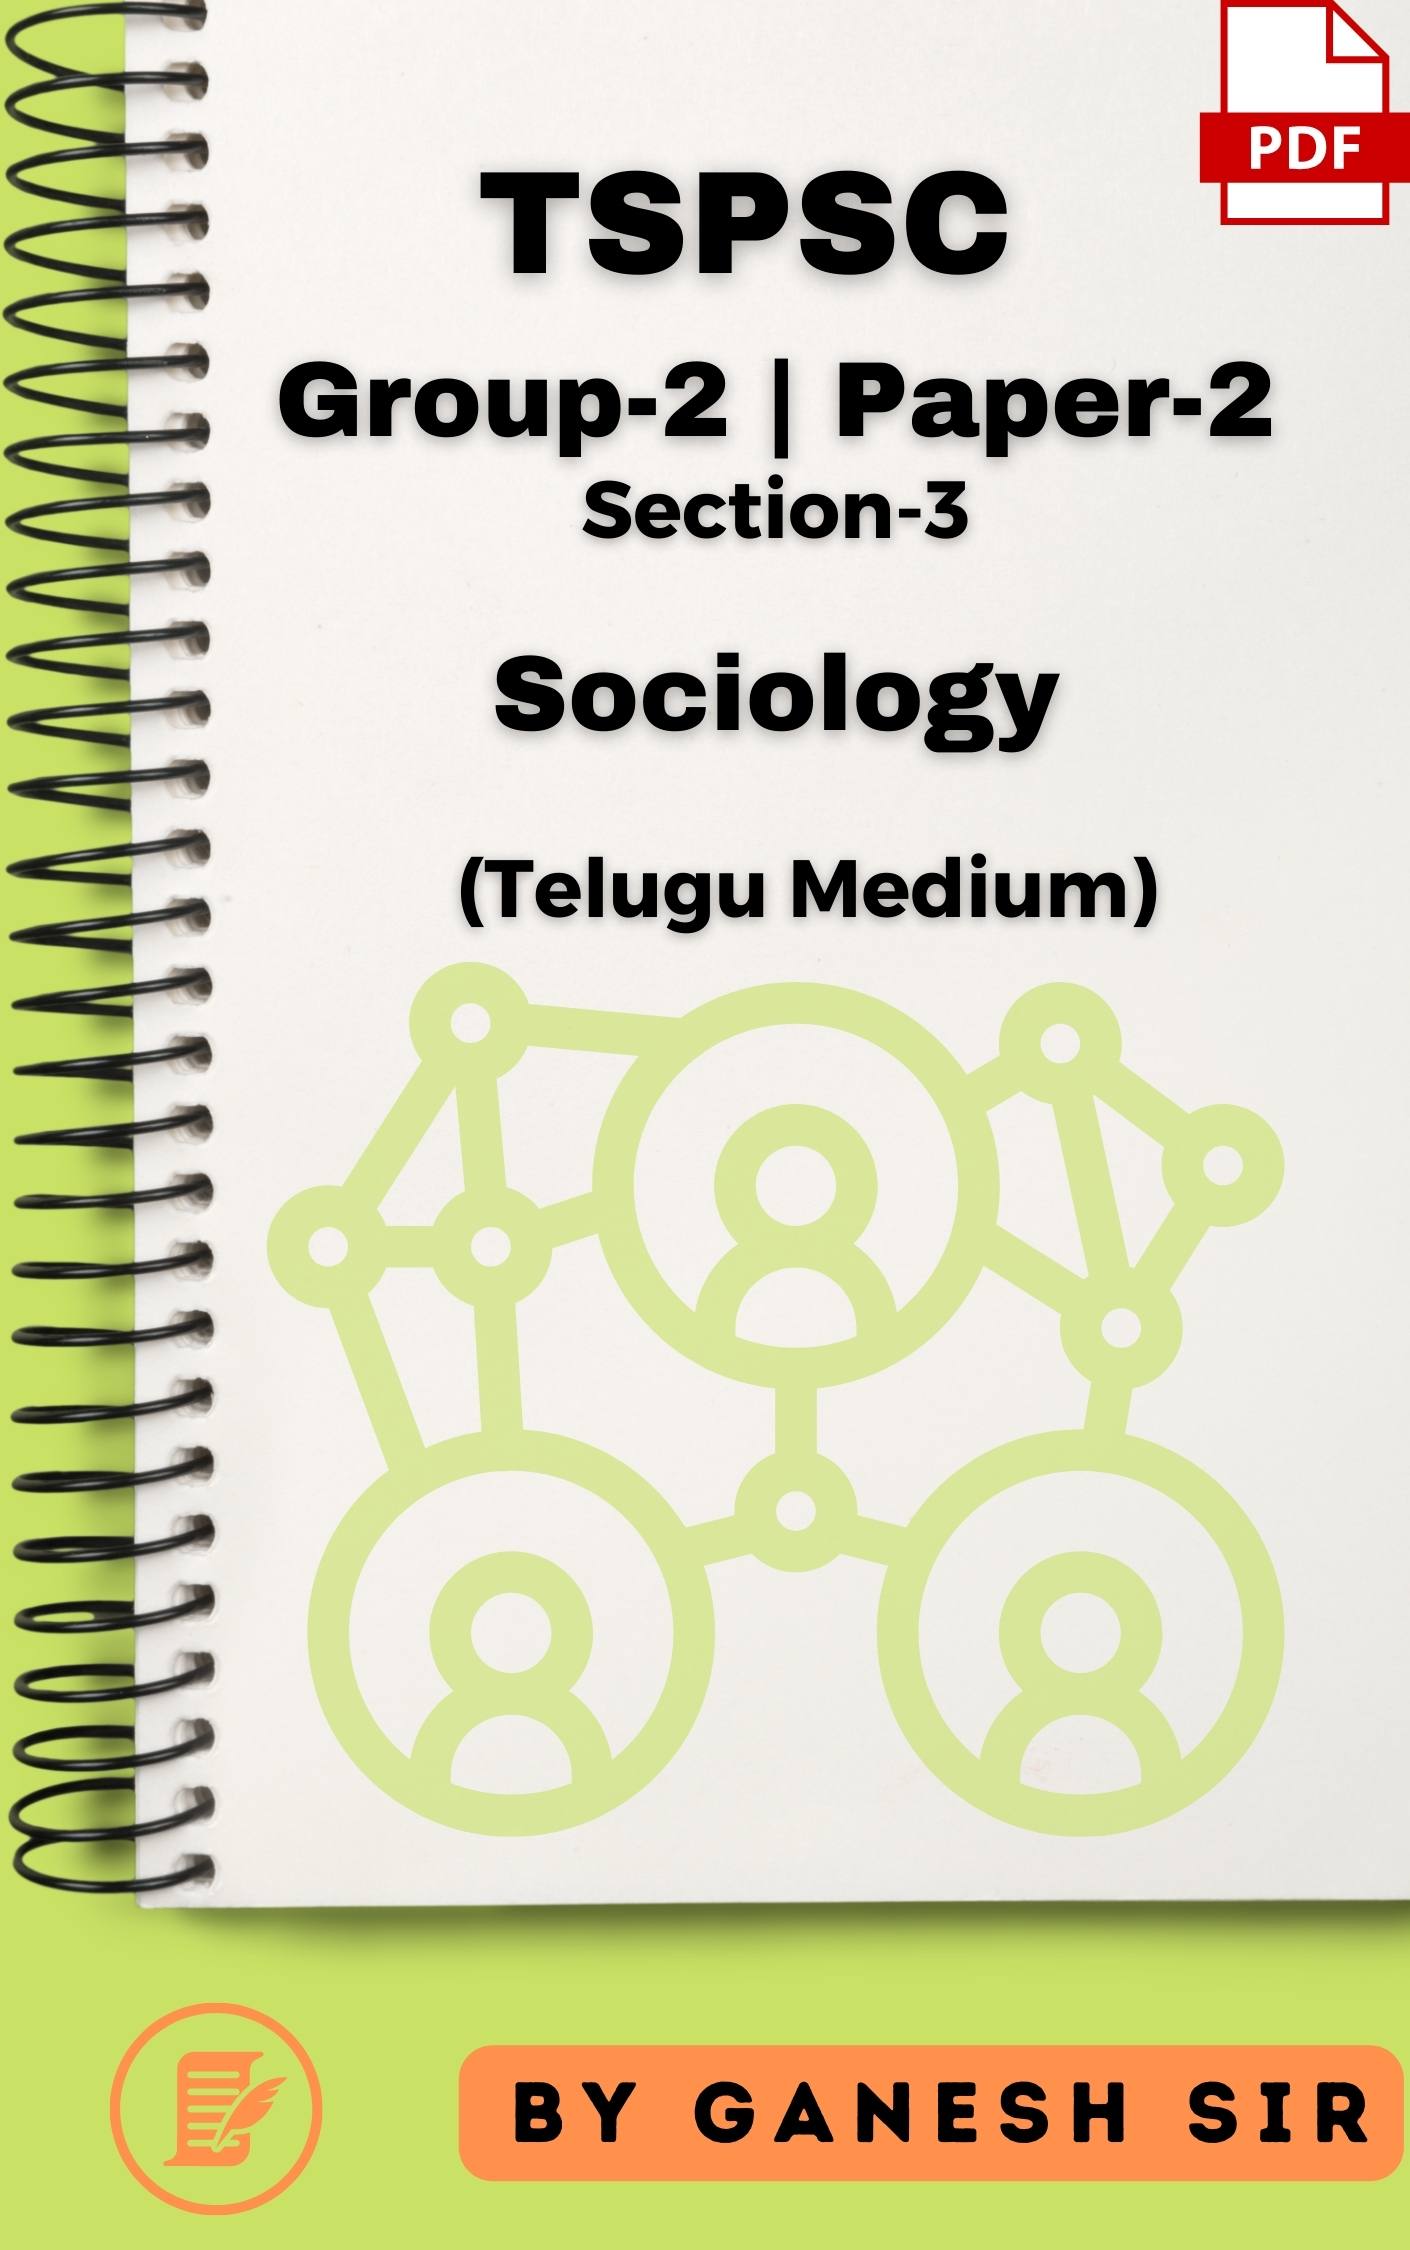 TSPSC Group-2 Paper-2 Section-3 Sociology (Hand Written Class Notes - Telugu Medium) by Ganesh Sir